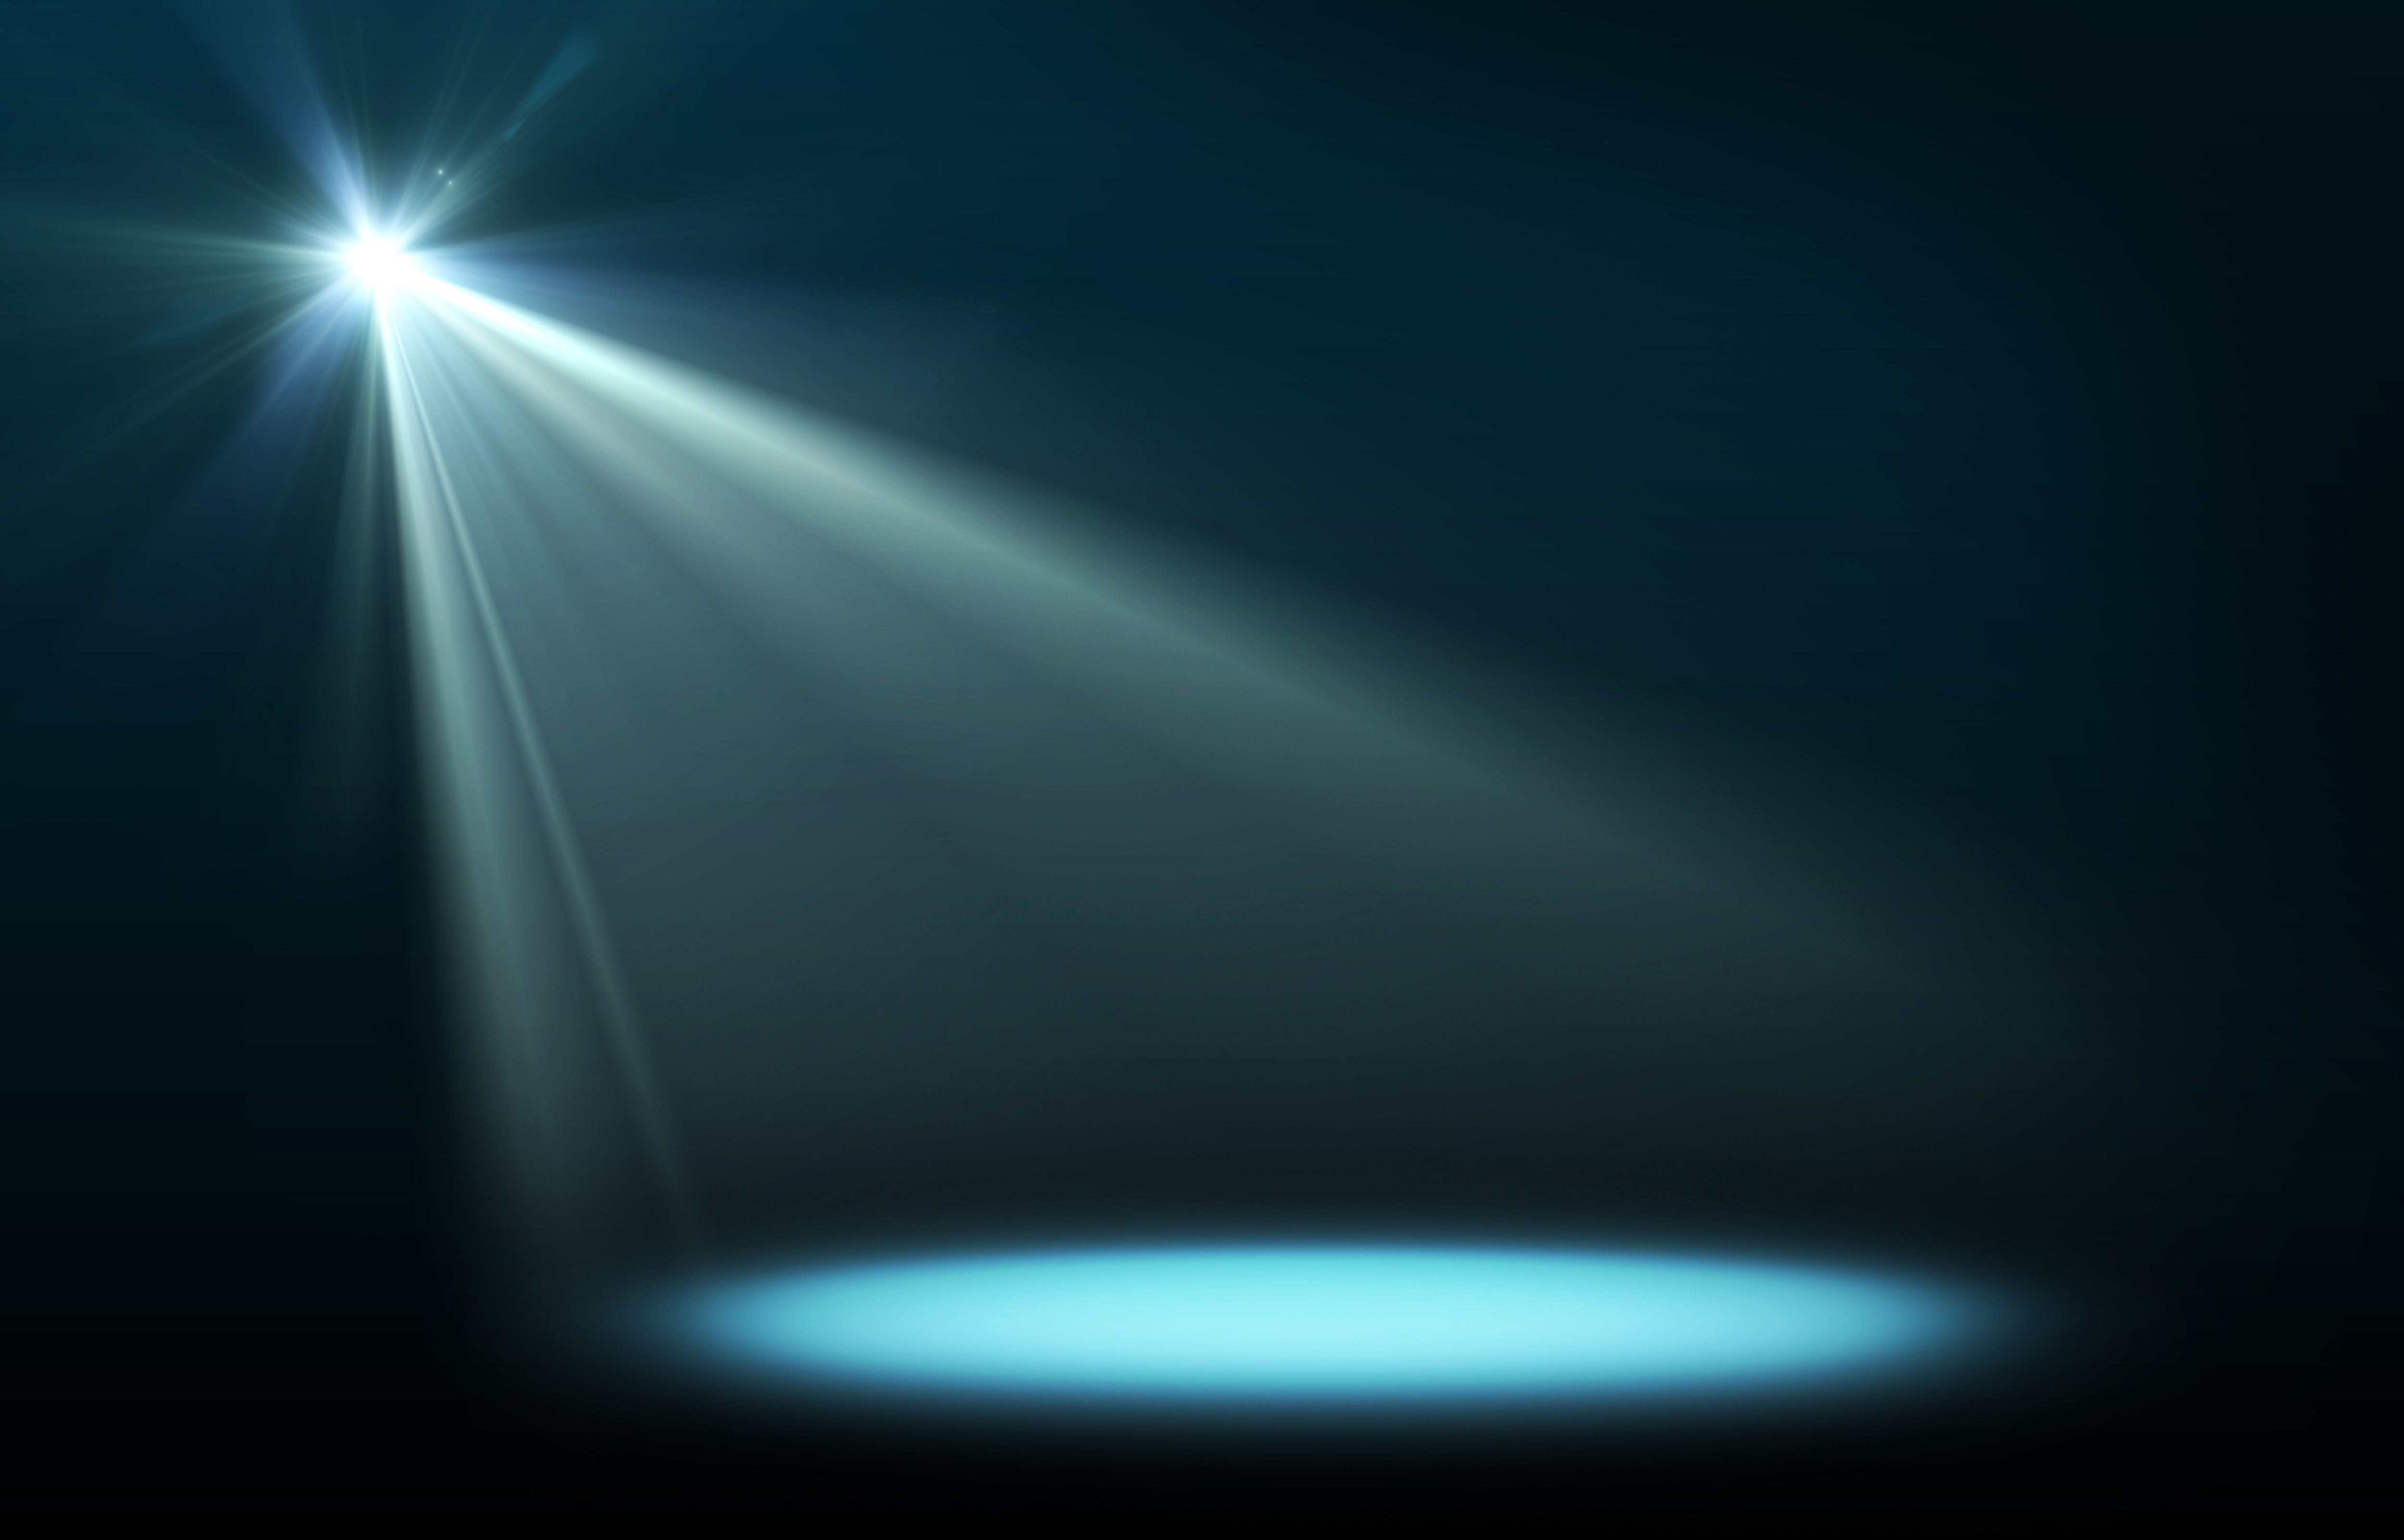 Free download Top Concert Stage Lights Background Wallpaper [5000x3203] for your Desktop, Mobile & Tablet. Explore Stage Lighting Wallpaper. Tampa Bay Lightning Wallpaper, Blue Lightning Wallpaper, Lighting Wallpaper for Desktops